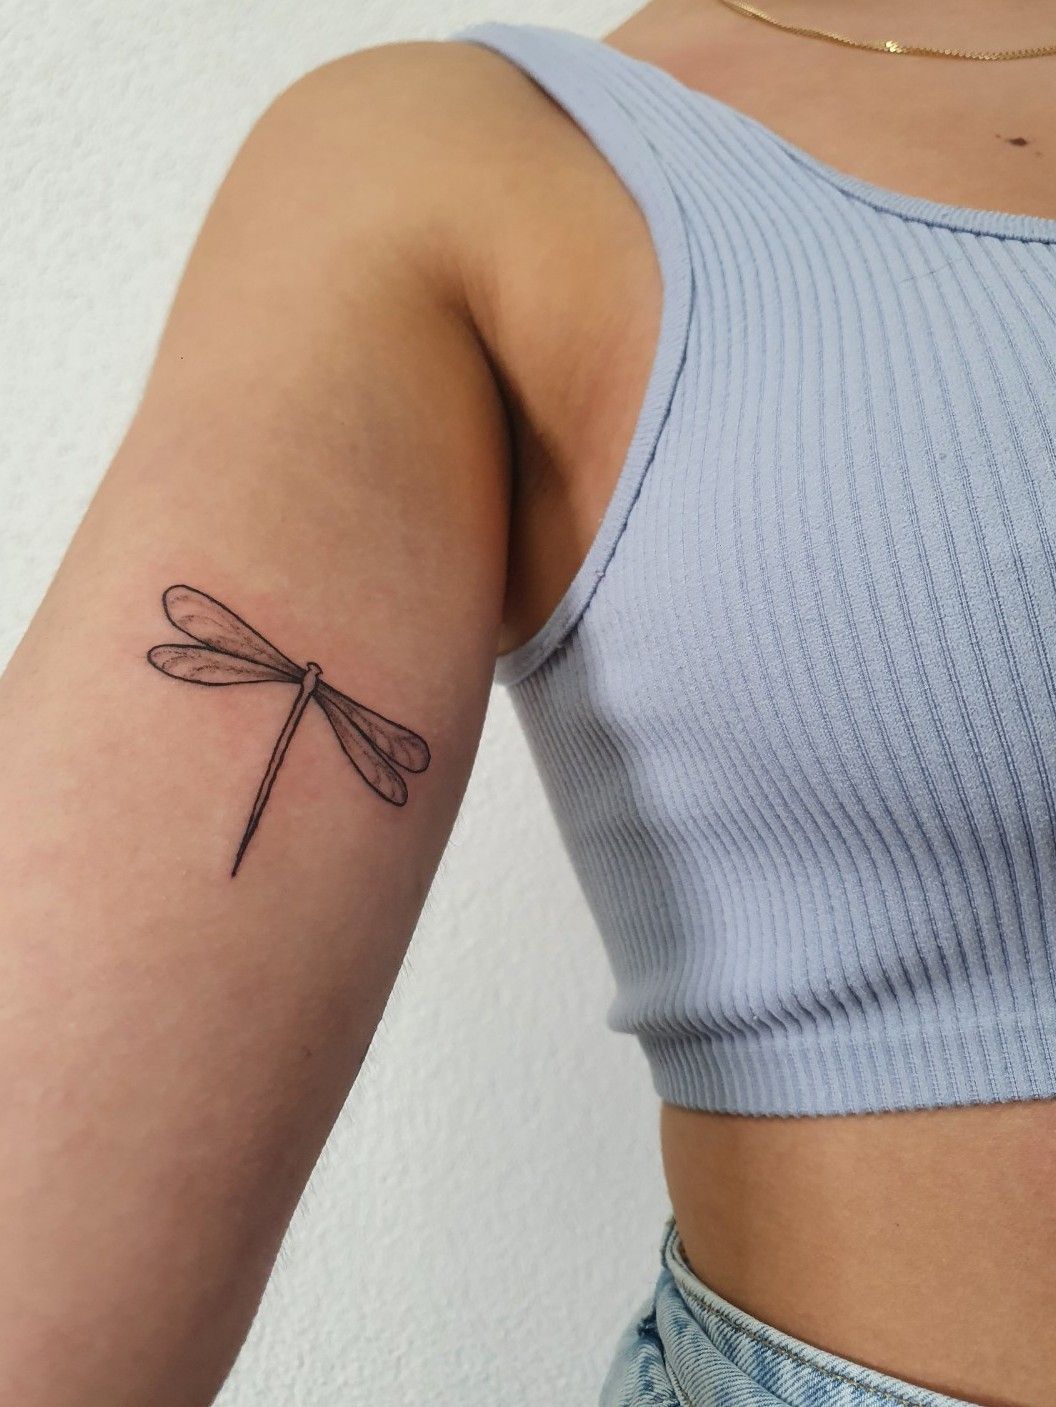 Minimalist Dragonfly Tattoo Idea  BlackInk